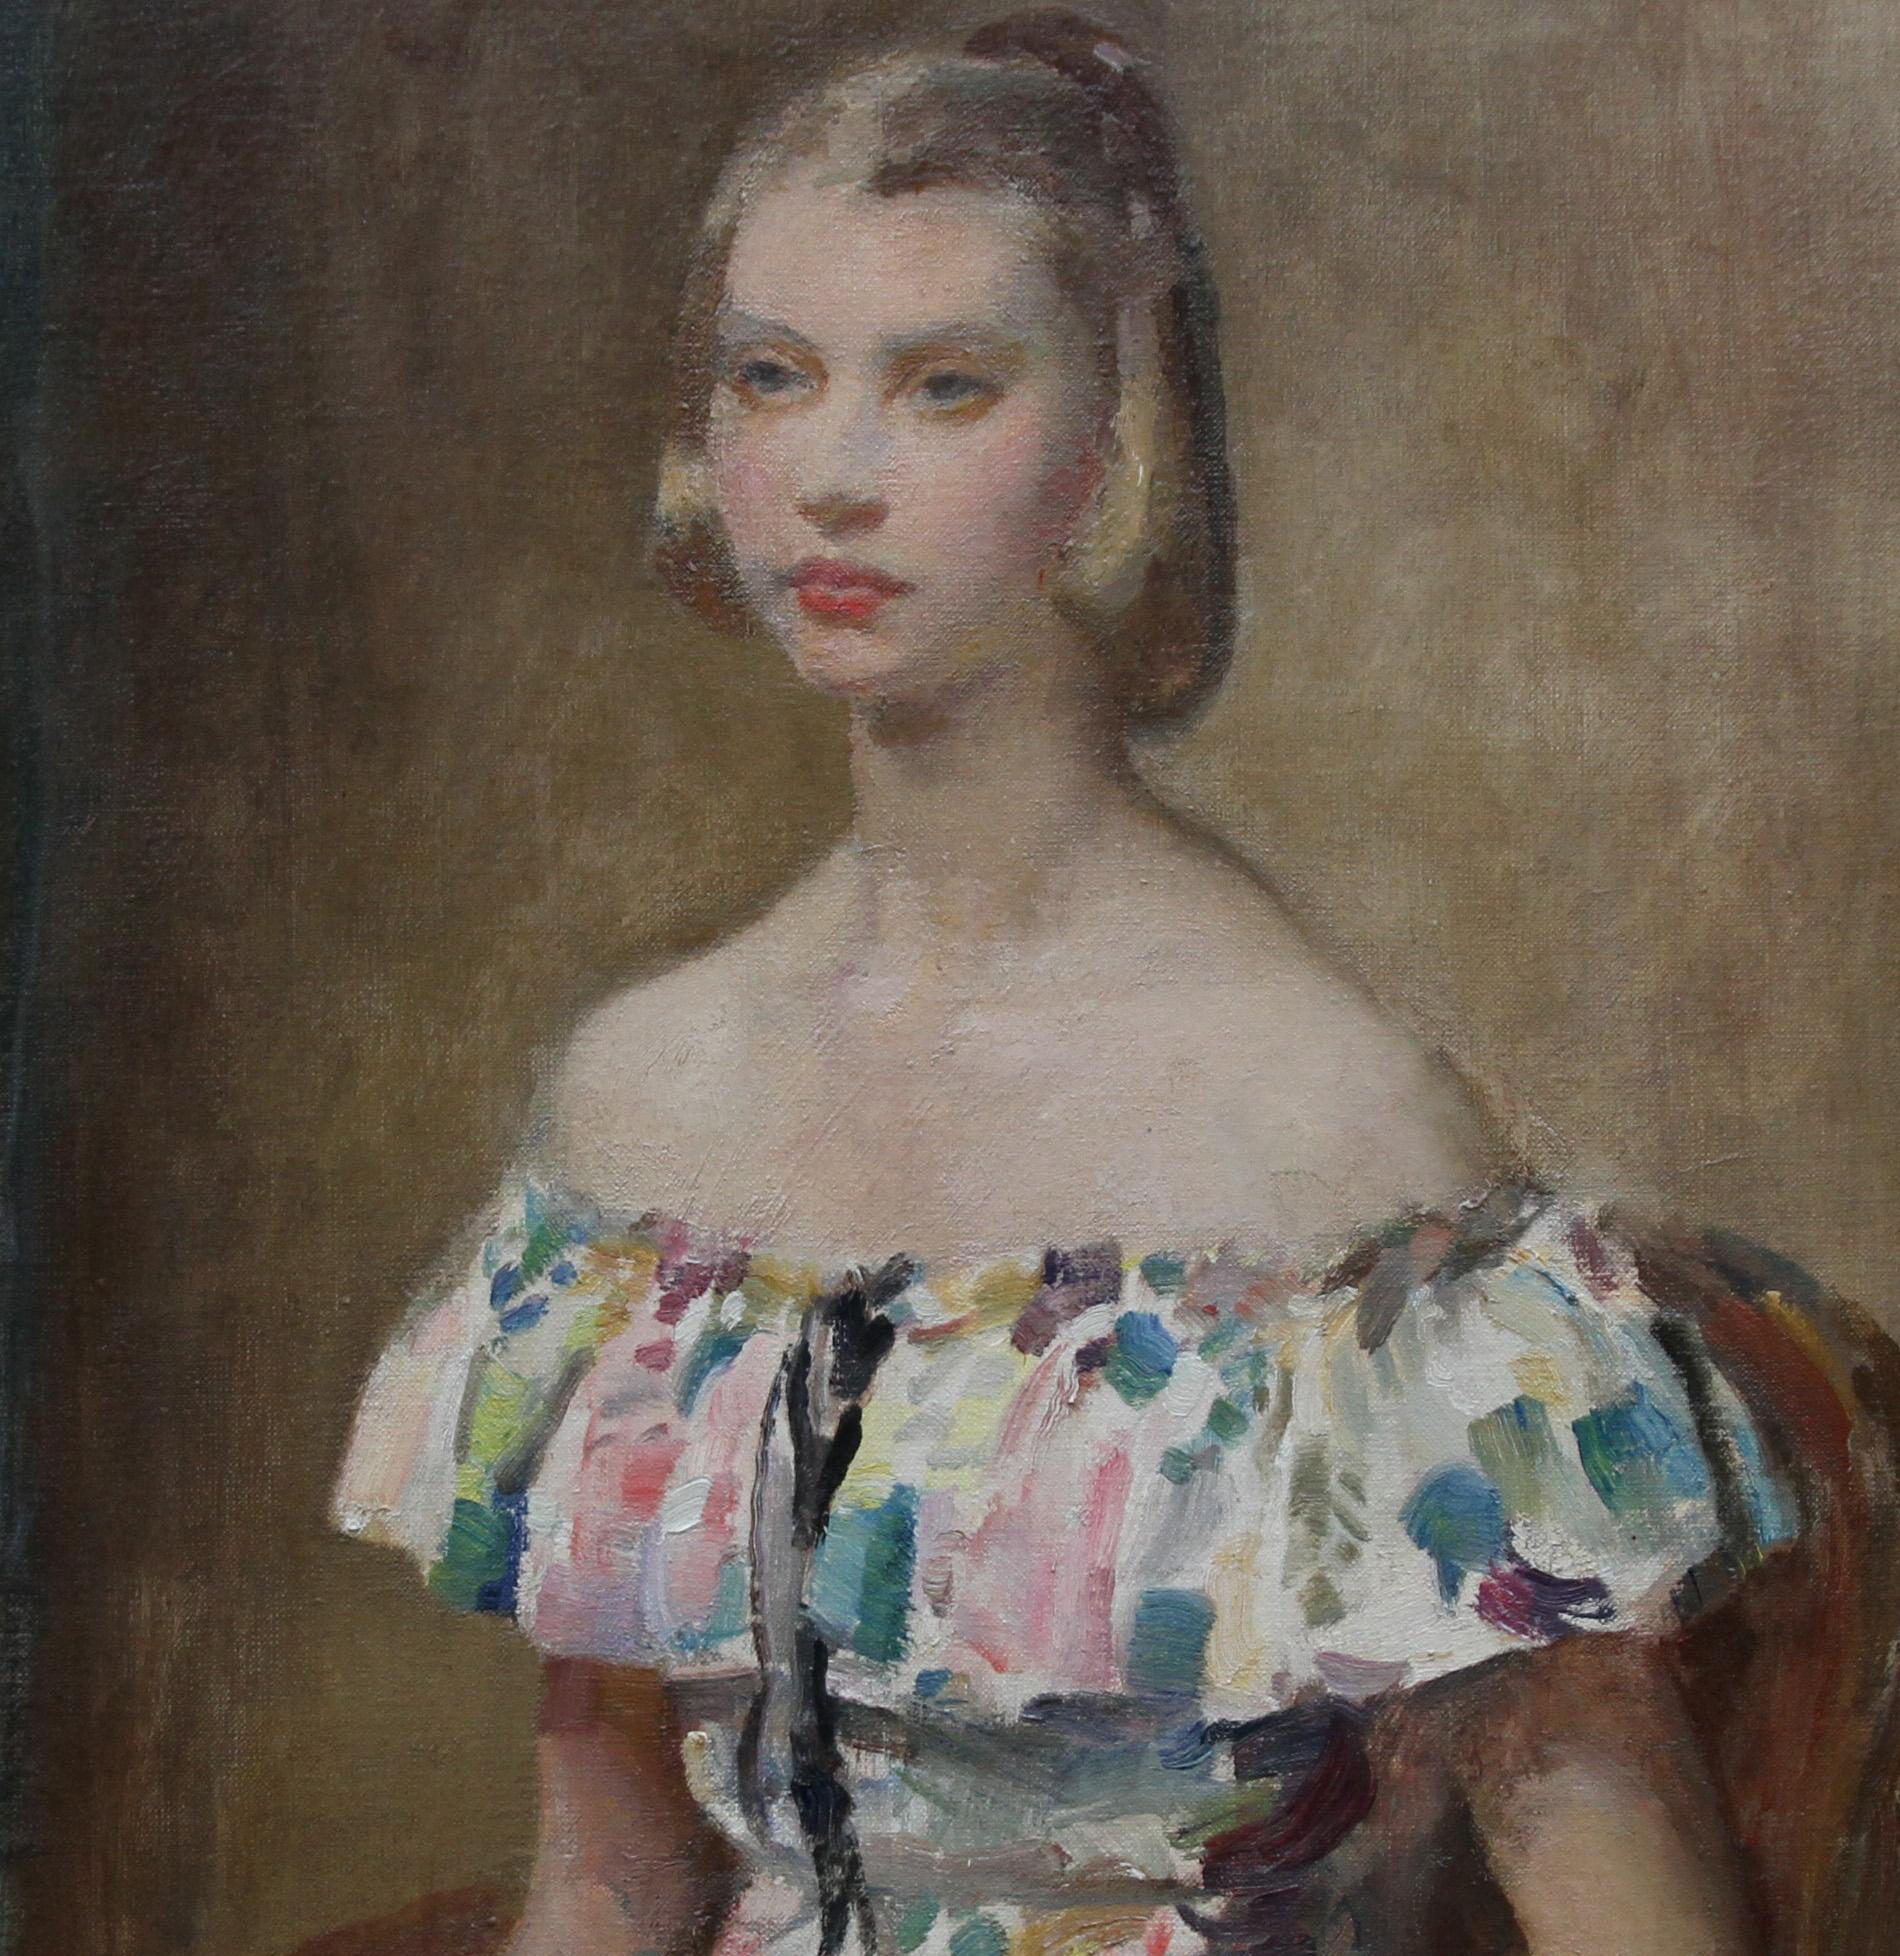 Ce charmant portrait a été peint vers 1920 par le célèbre portraitiste impressionniste britannique Walter Ernest Webster. Ce tableau représente une belle jeune femme dans une palette impressionniste.
Signé en bas à droite.
Provenance . Succession de